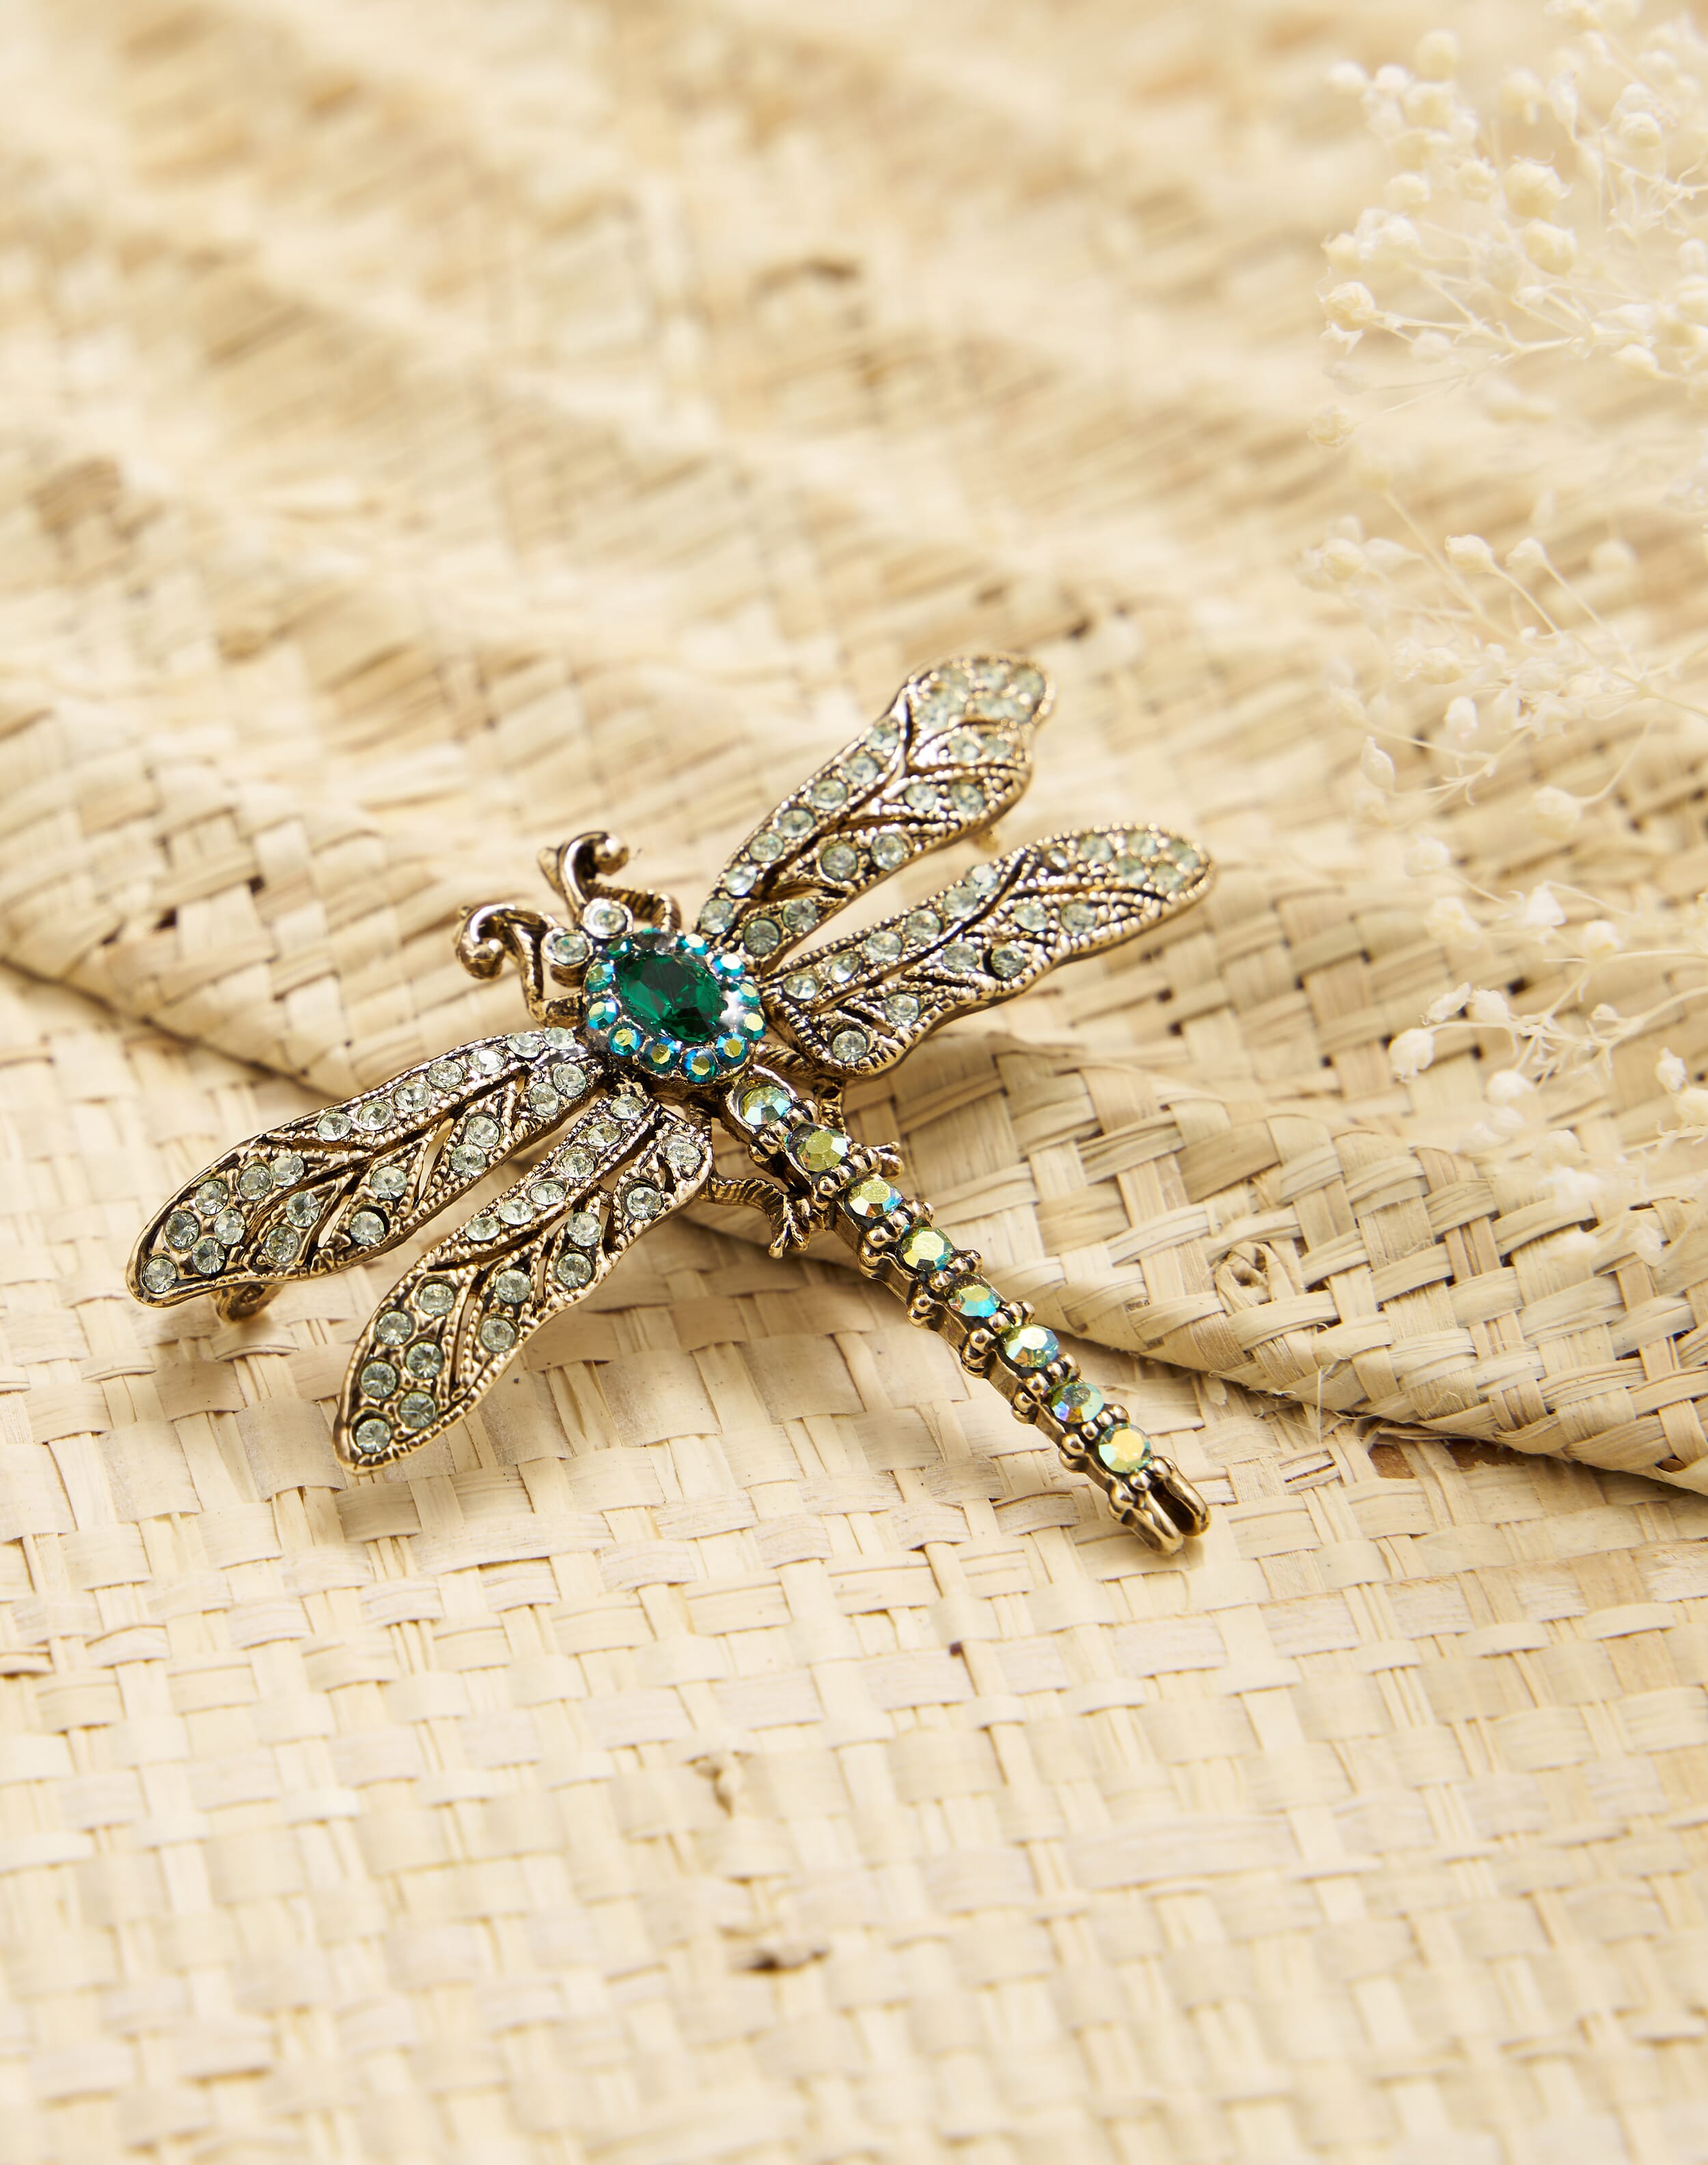 Dragonfly Crystal Brooch Emerald